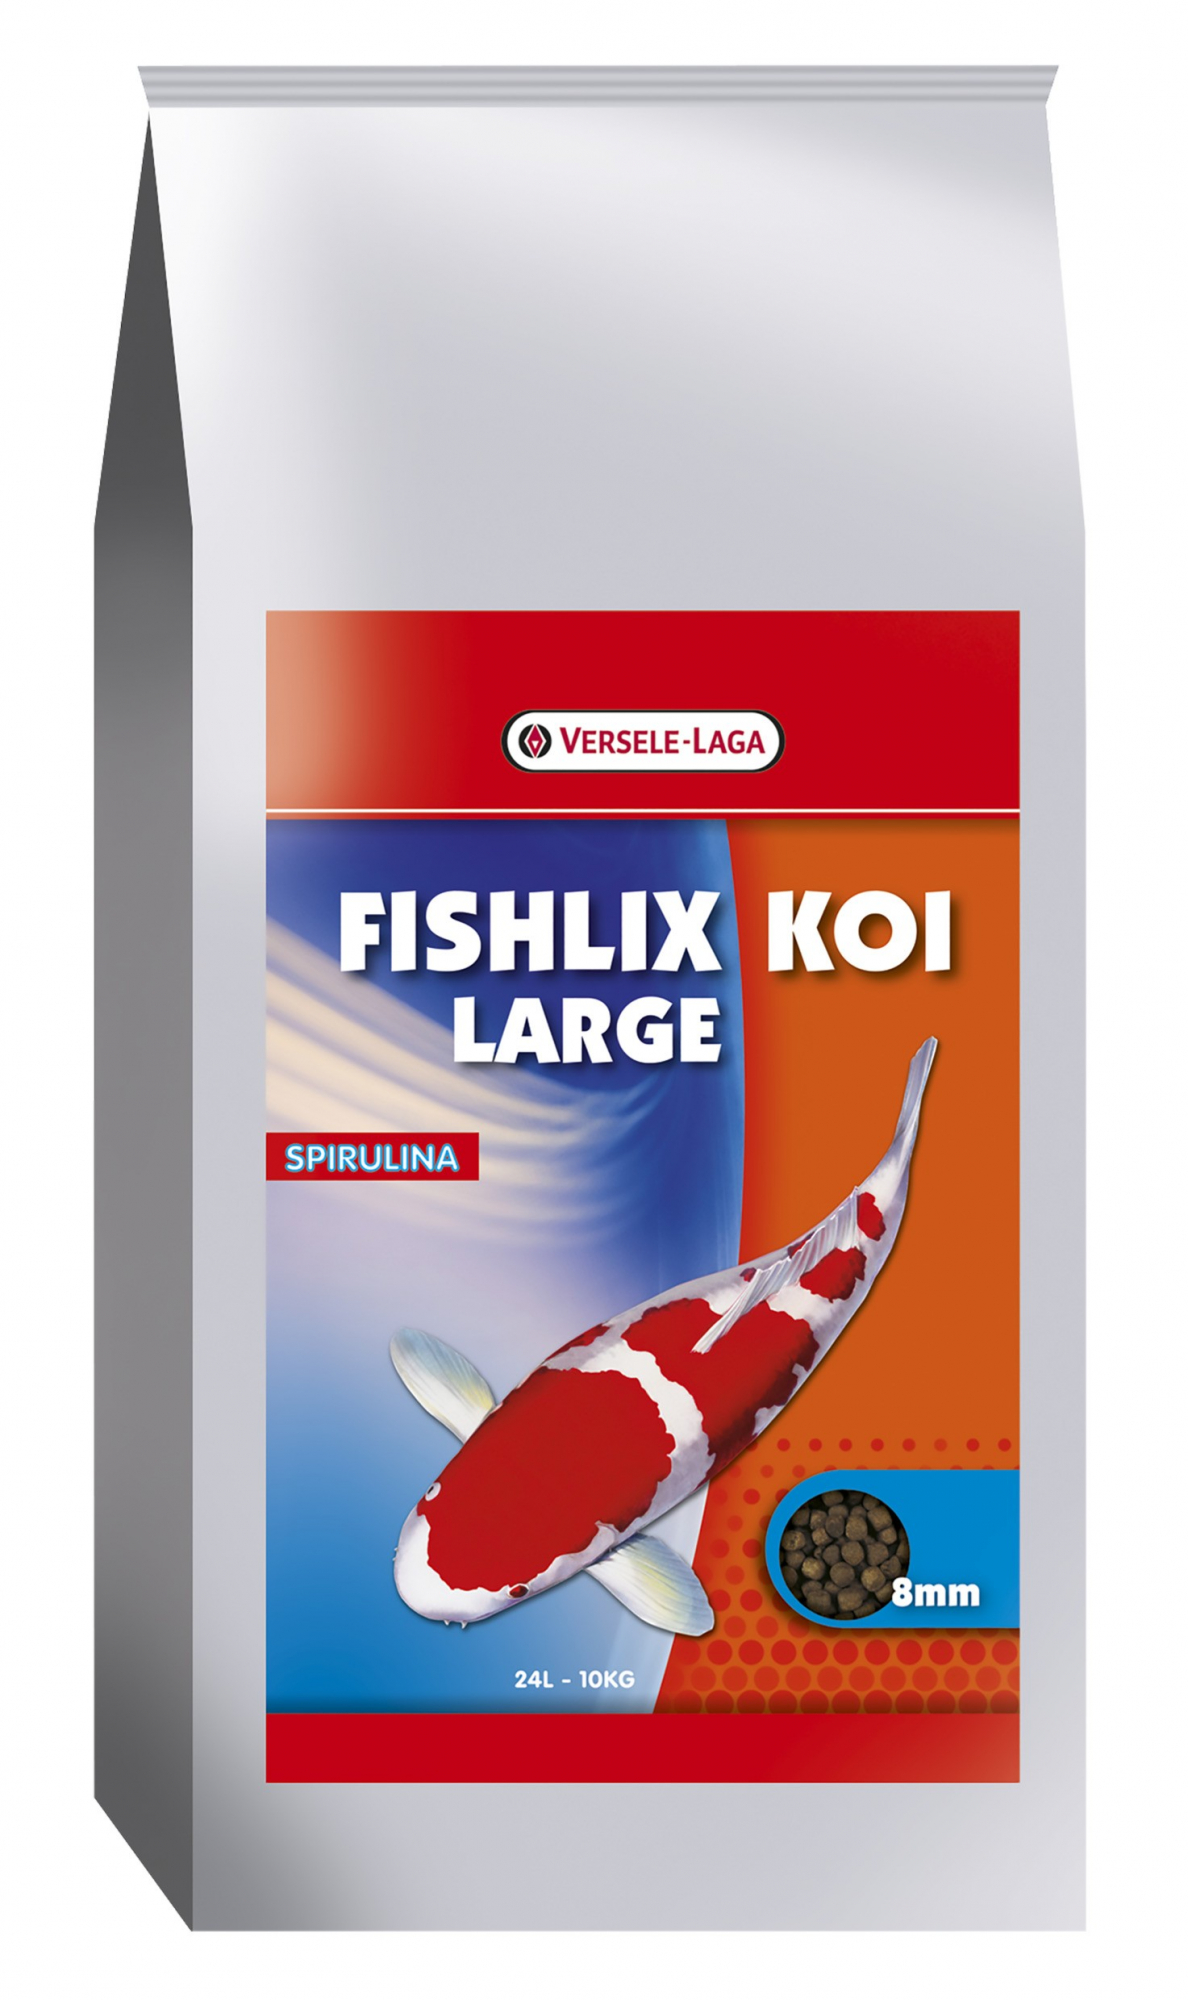 Fishlix Koi Large 8 mm Granuli flottanti per koi